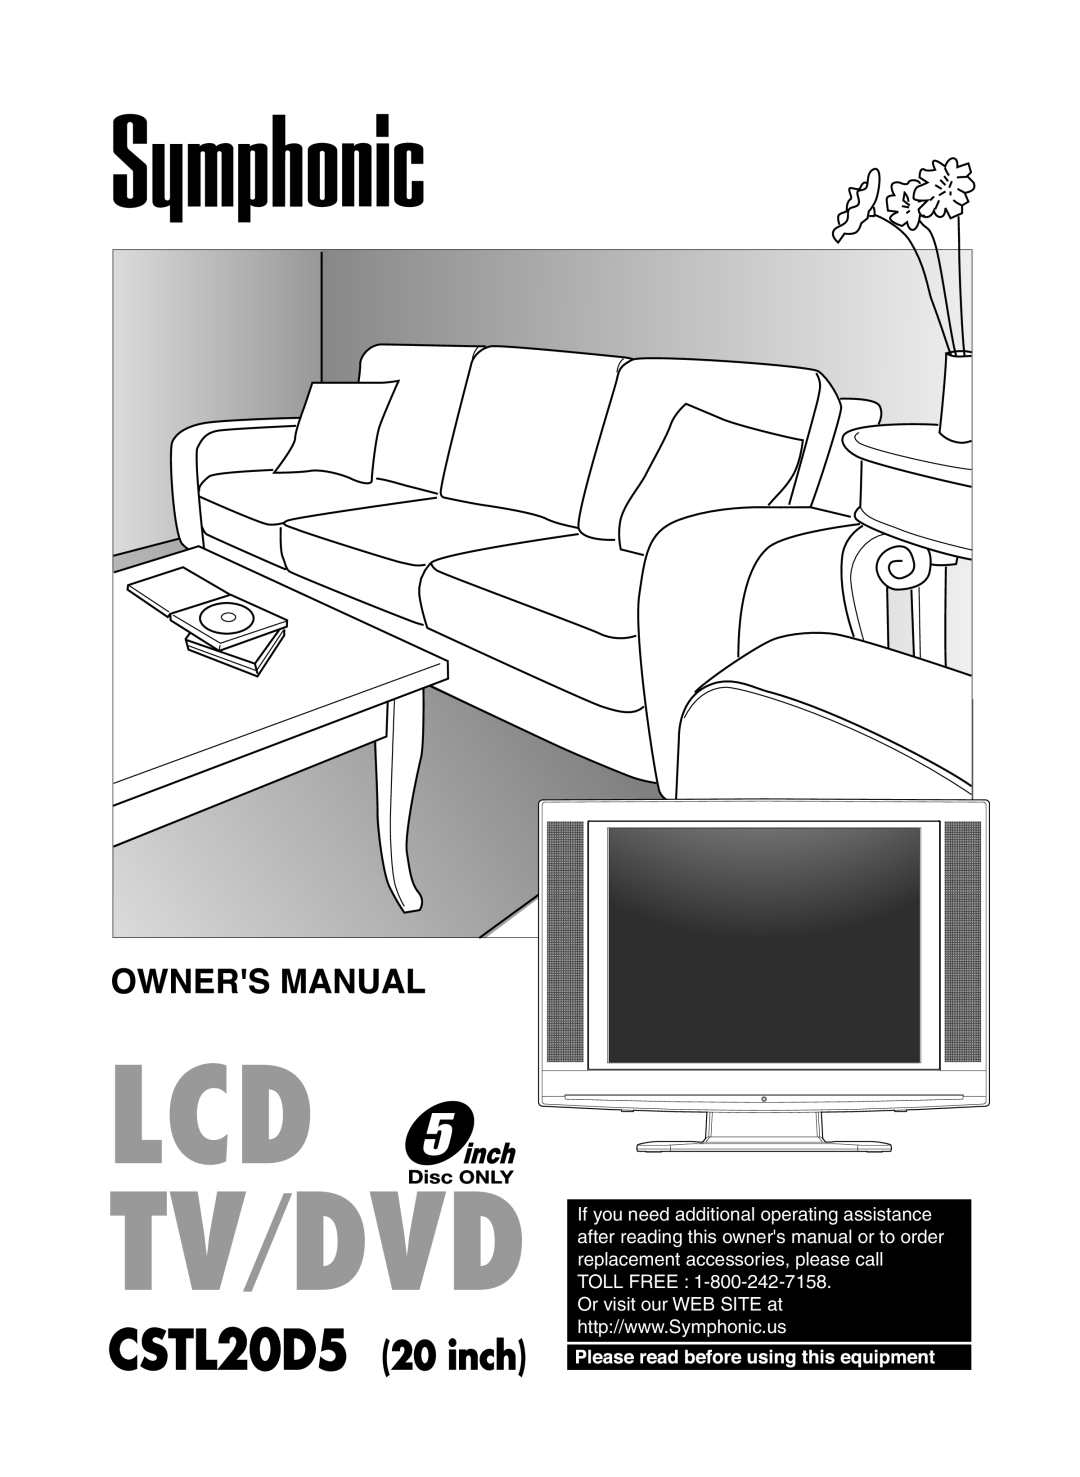 Symphonic LCD TV/DVD owner manual CSTL20D5 20 inch 